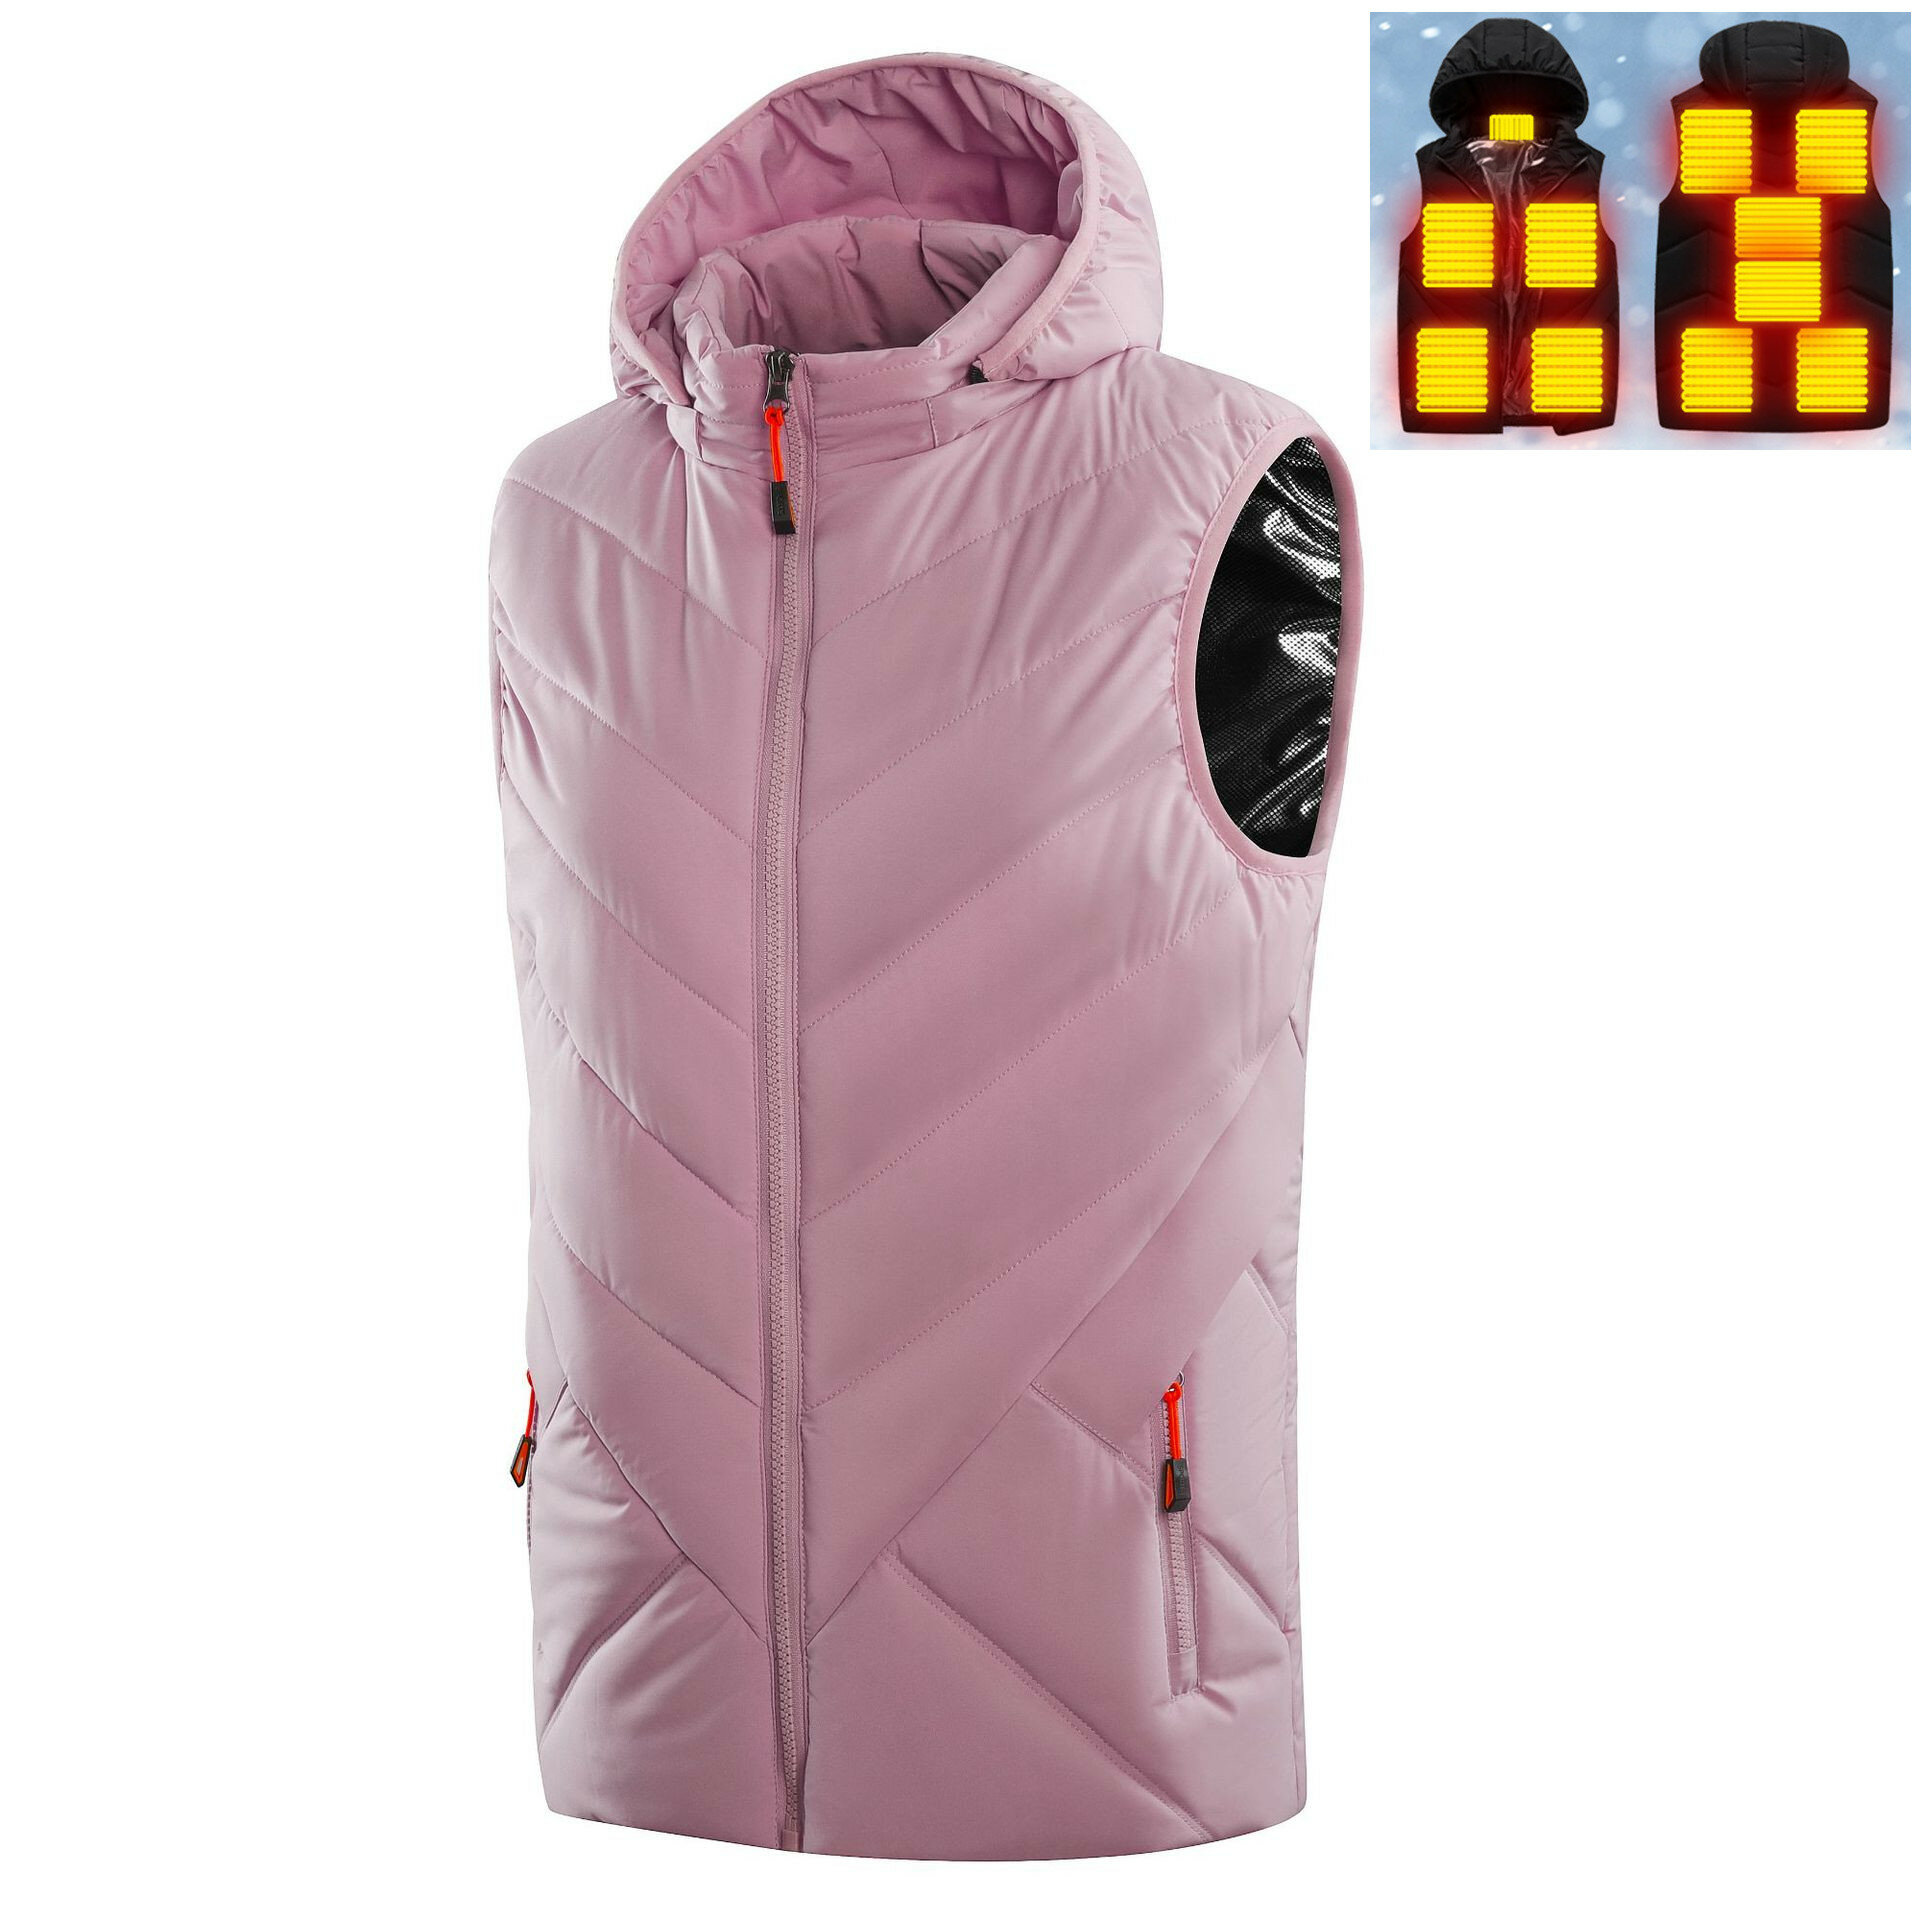 Ζεστό γιλέκο για γυναίκες με 11 θερμαινόμενες περιοχές, αμάνικο παντελόνι από βαμβάκι με καπέλο και θέρμανση USB για εξωτερική χρήση, ροζ ρούχα